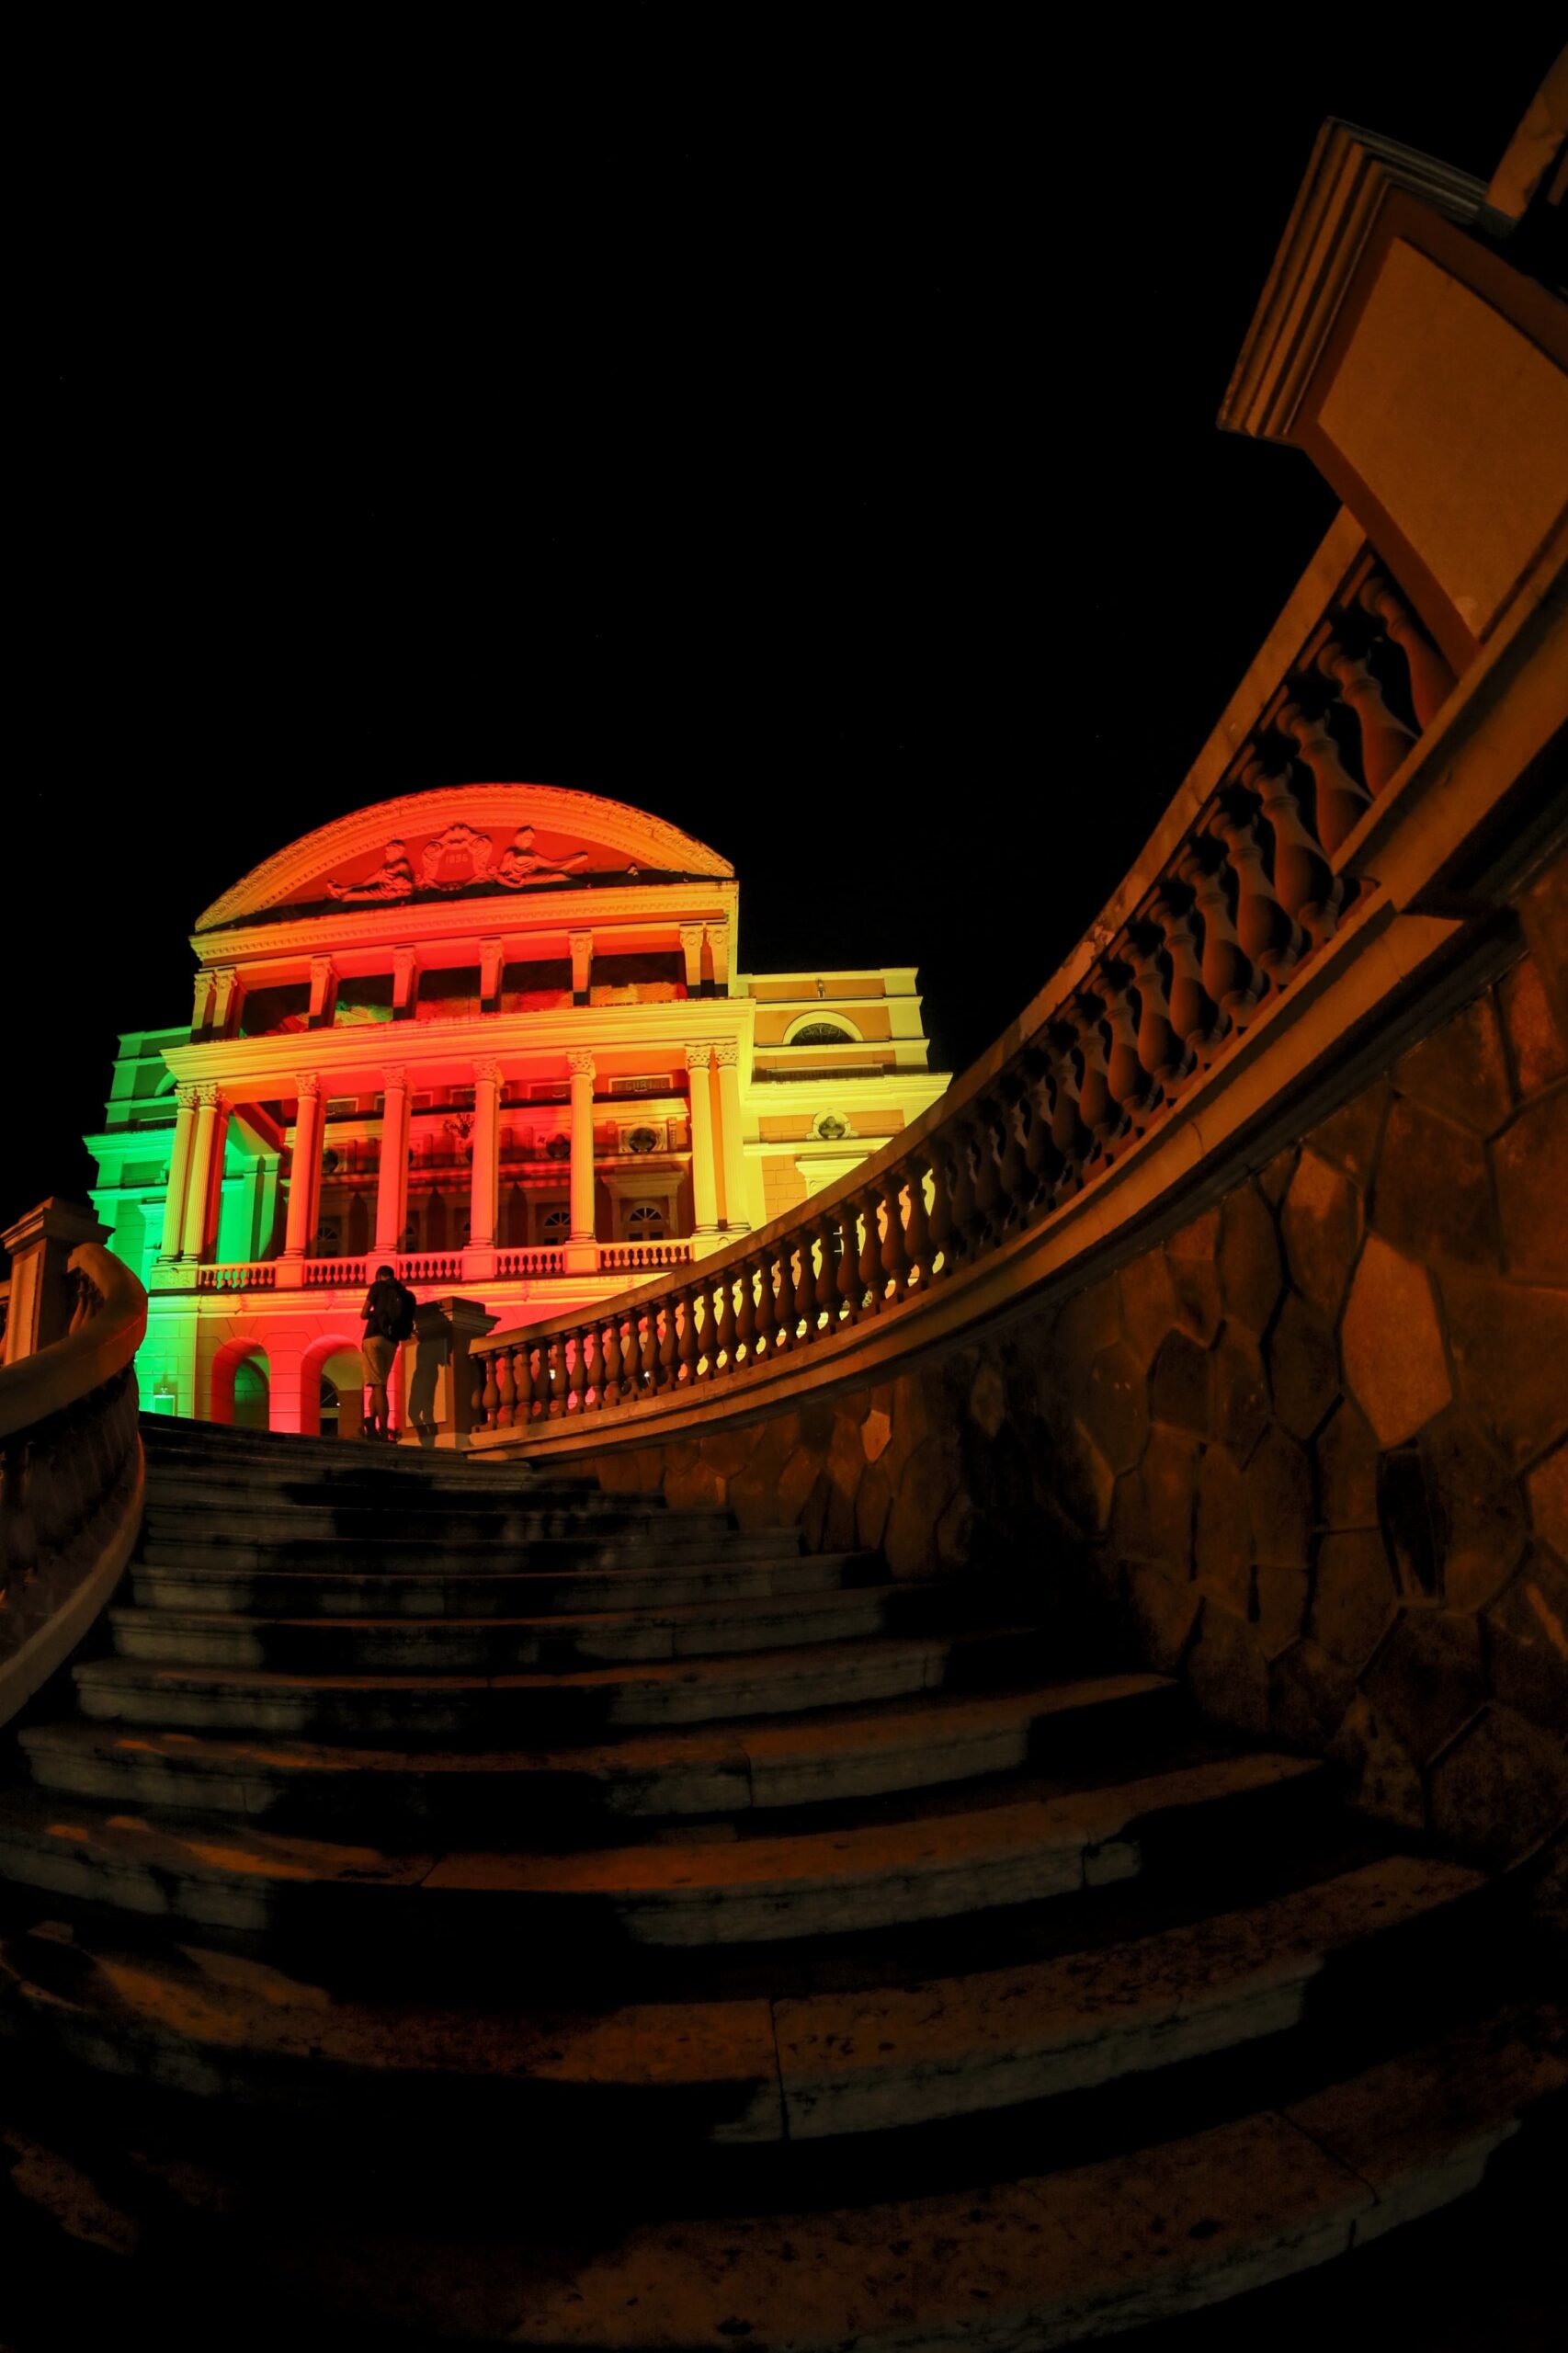 Teatro Amazonas recebe iluminação com as cores da bandeira do Rio Grande do Sul